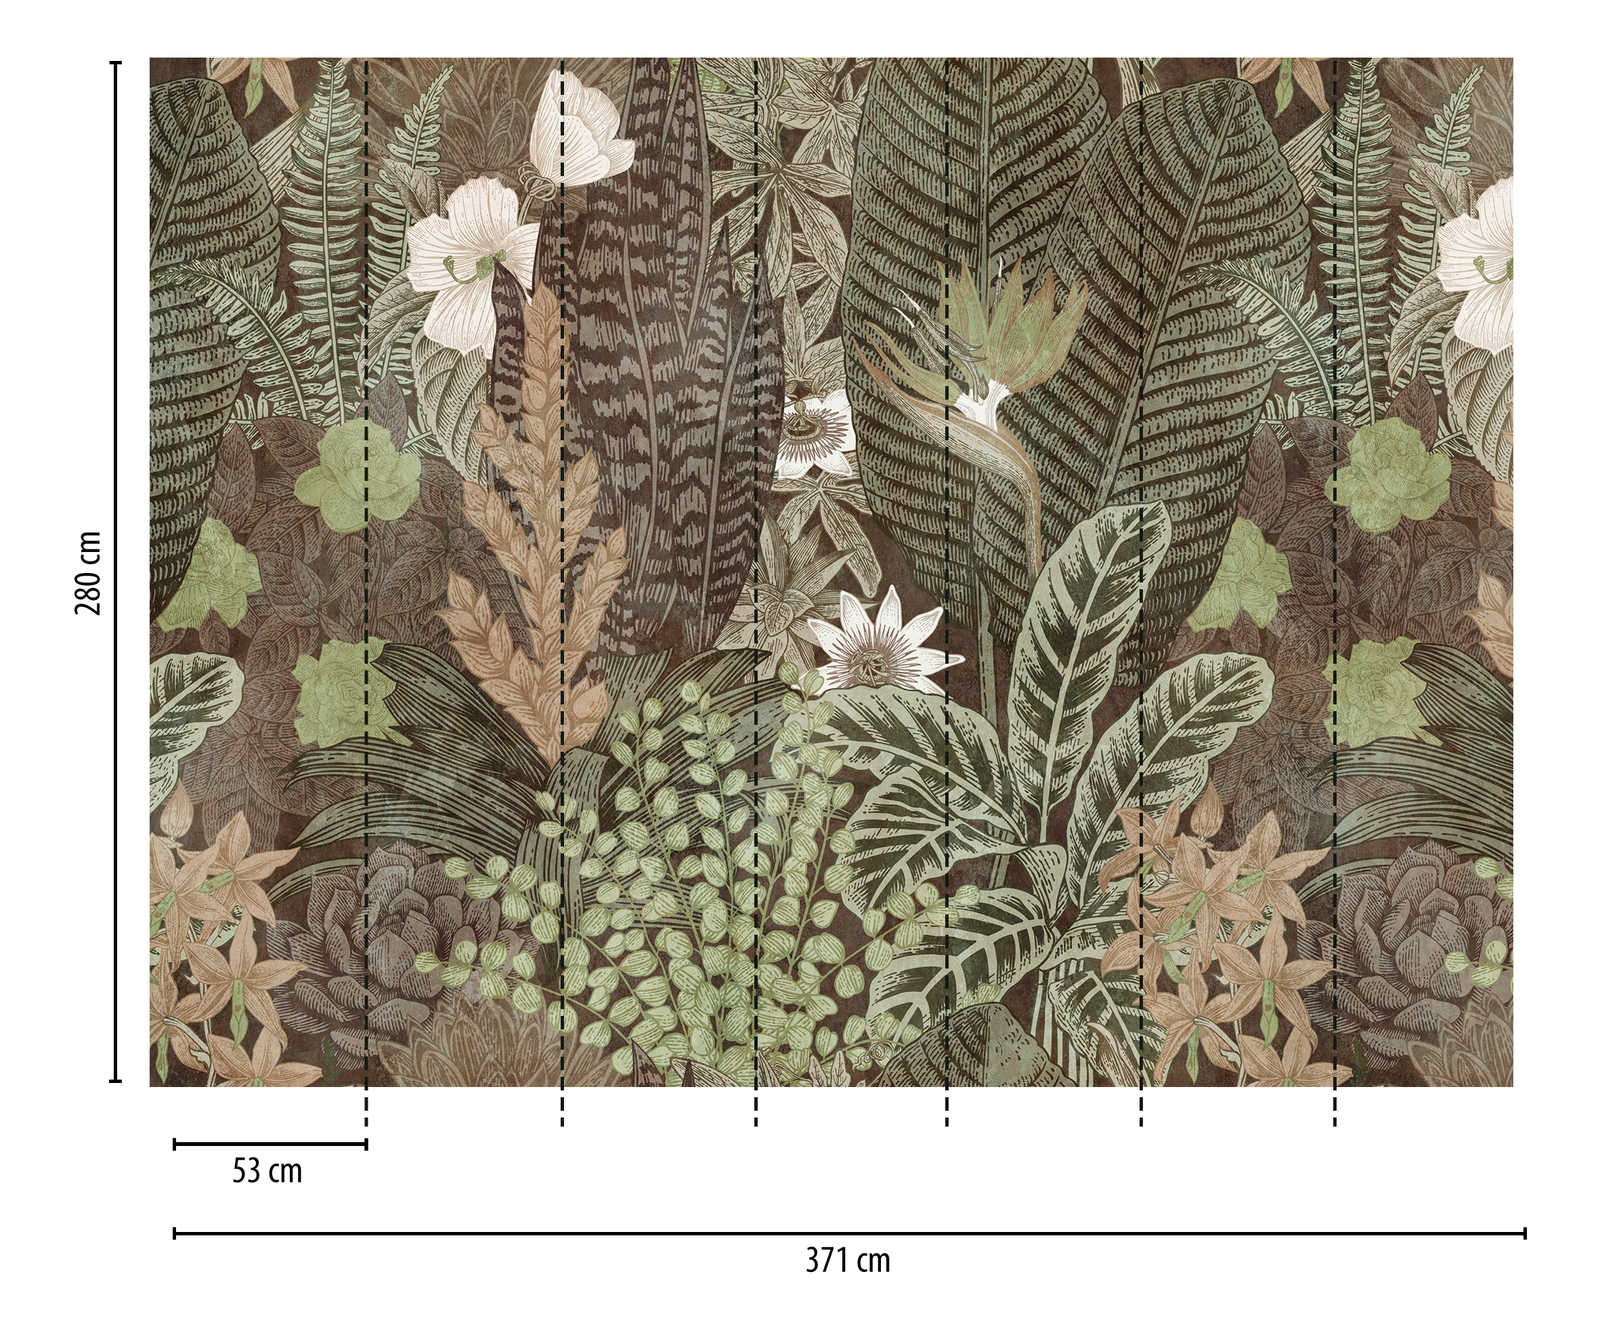             Nouveauté papier peint - papier peint à motifs Nature Design style dessin, brun & vert
        